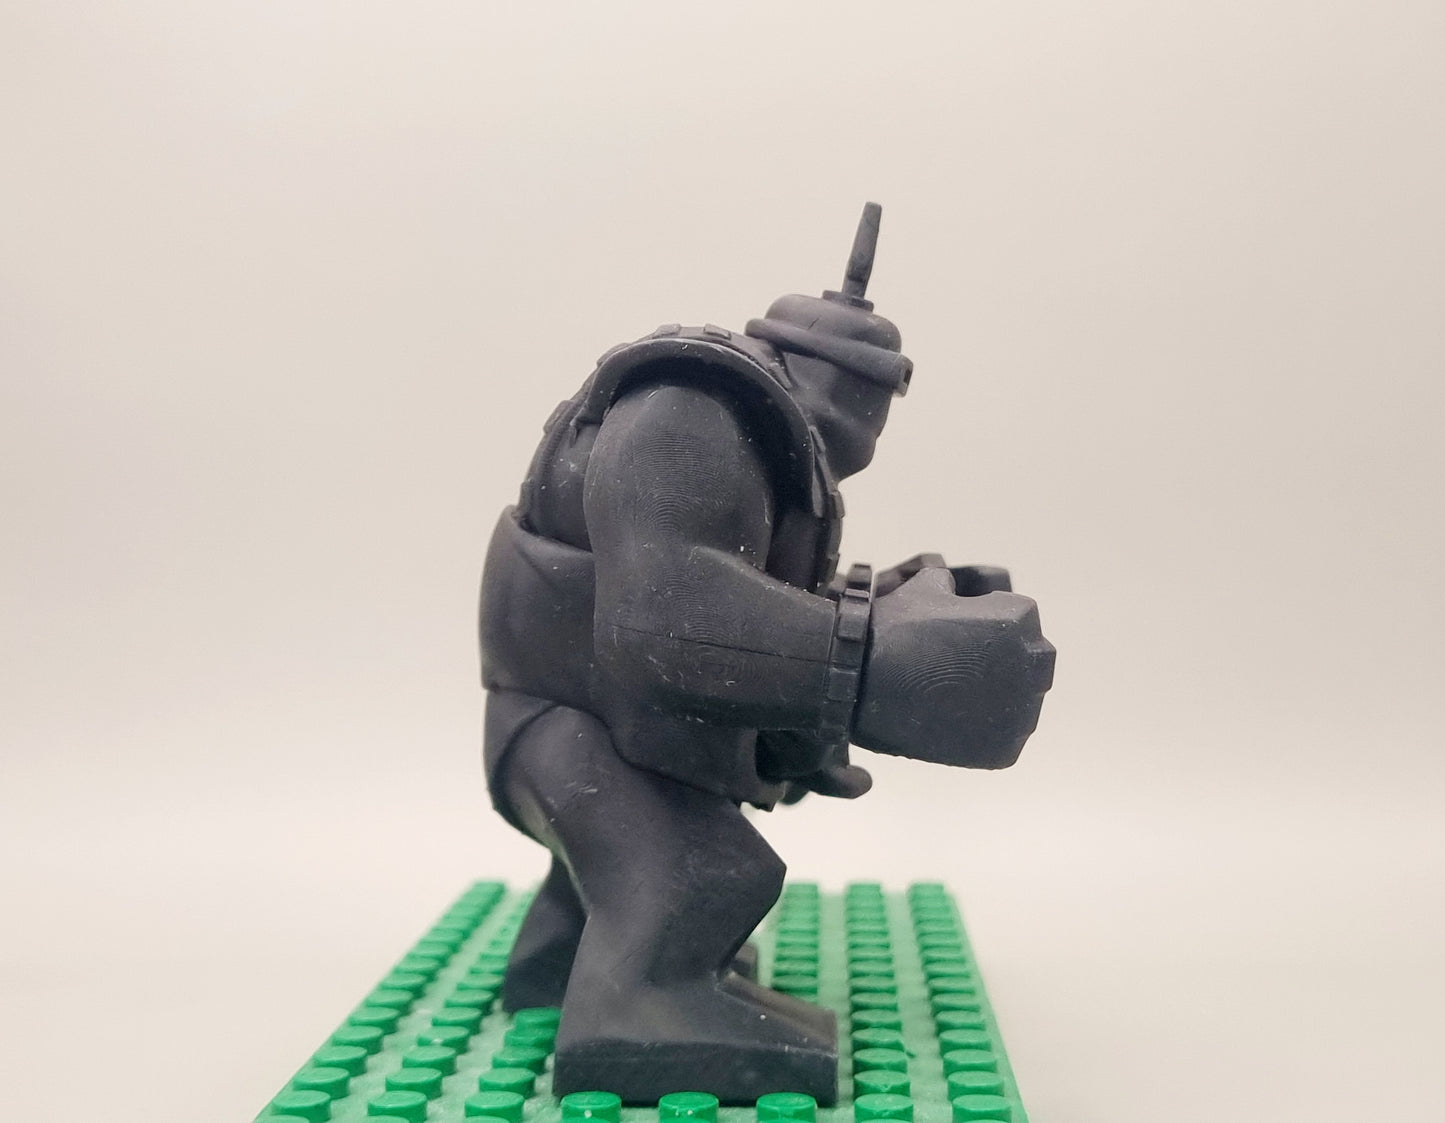 Building toy custom 3D printed tortoise brain enemy big figure!